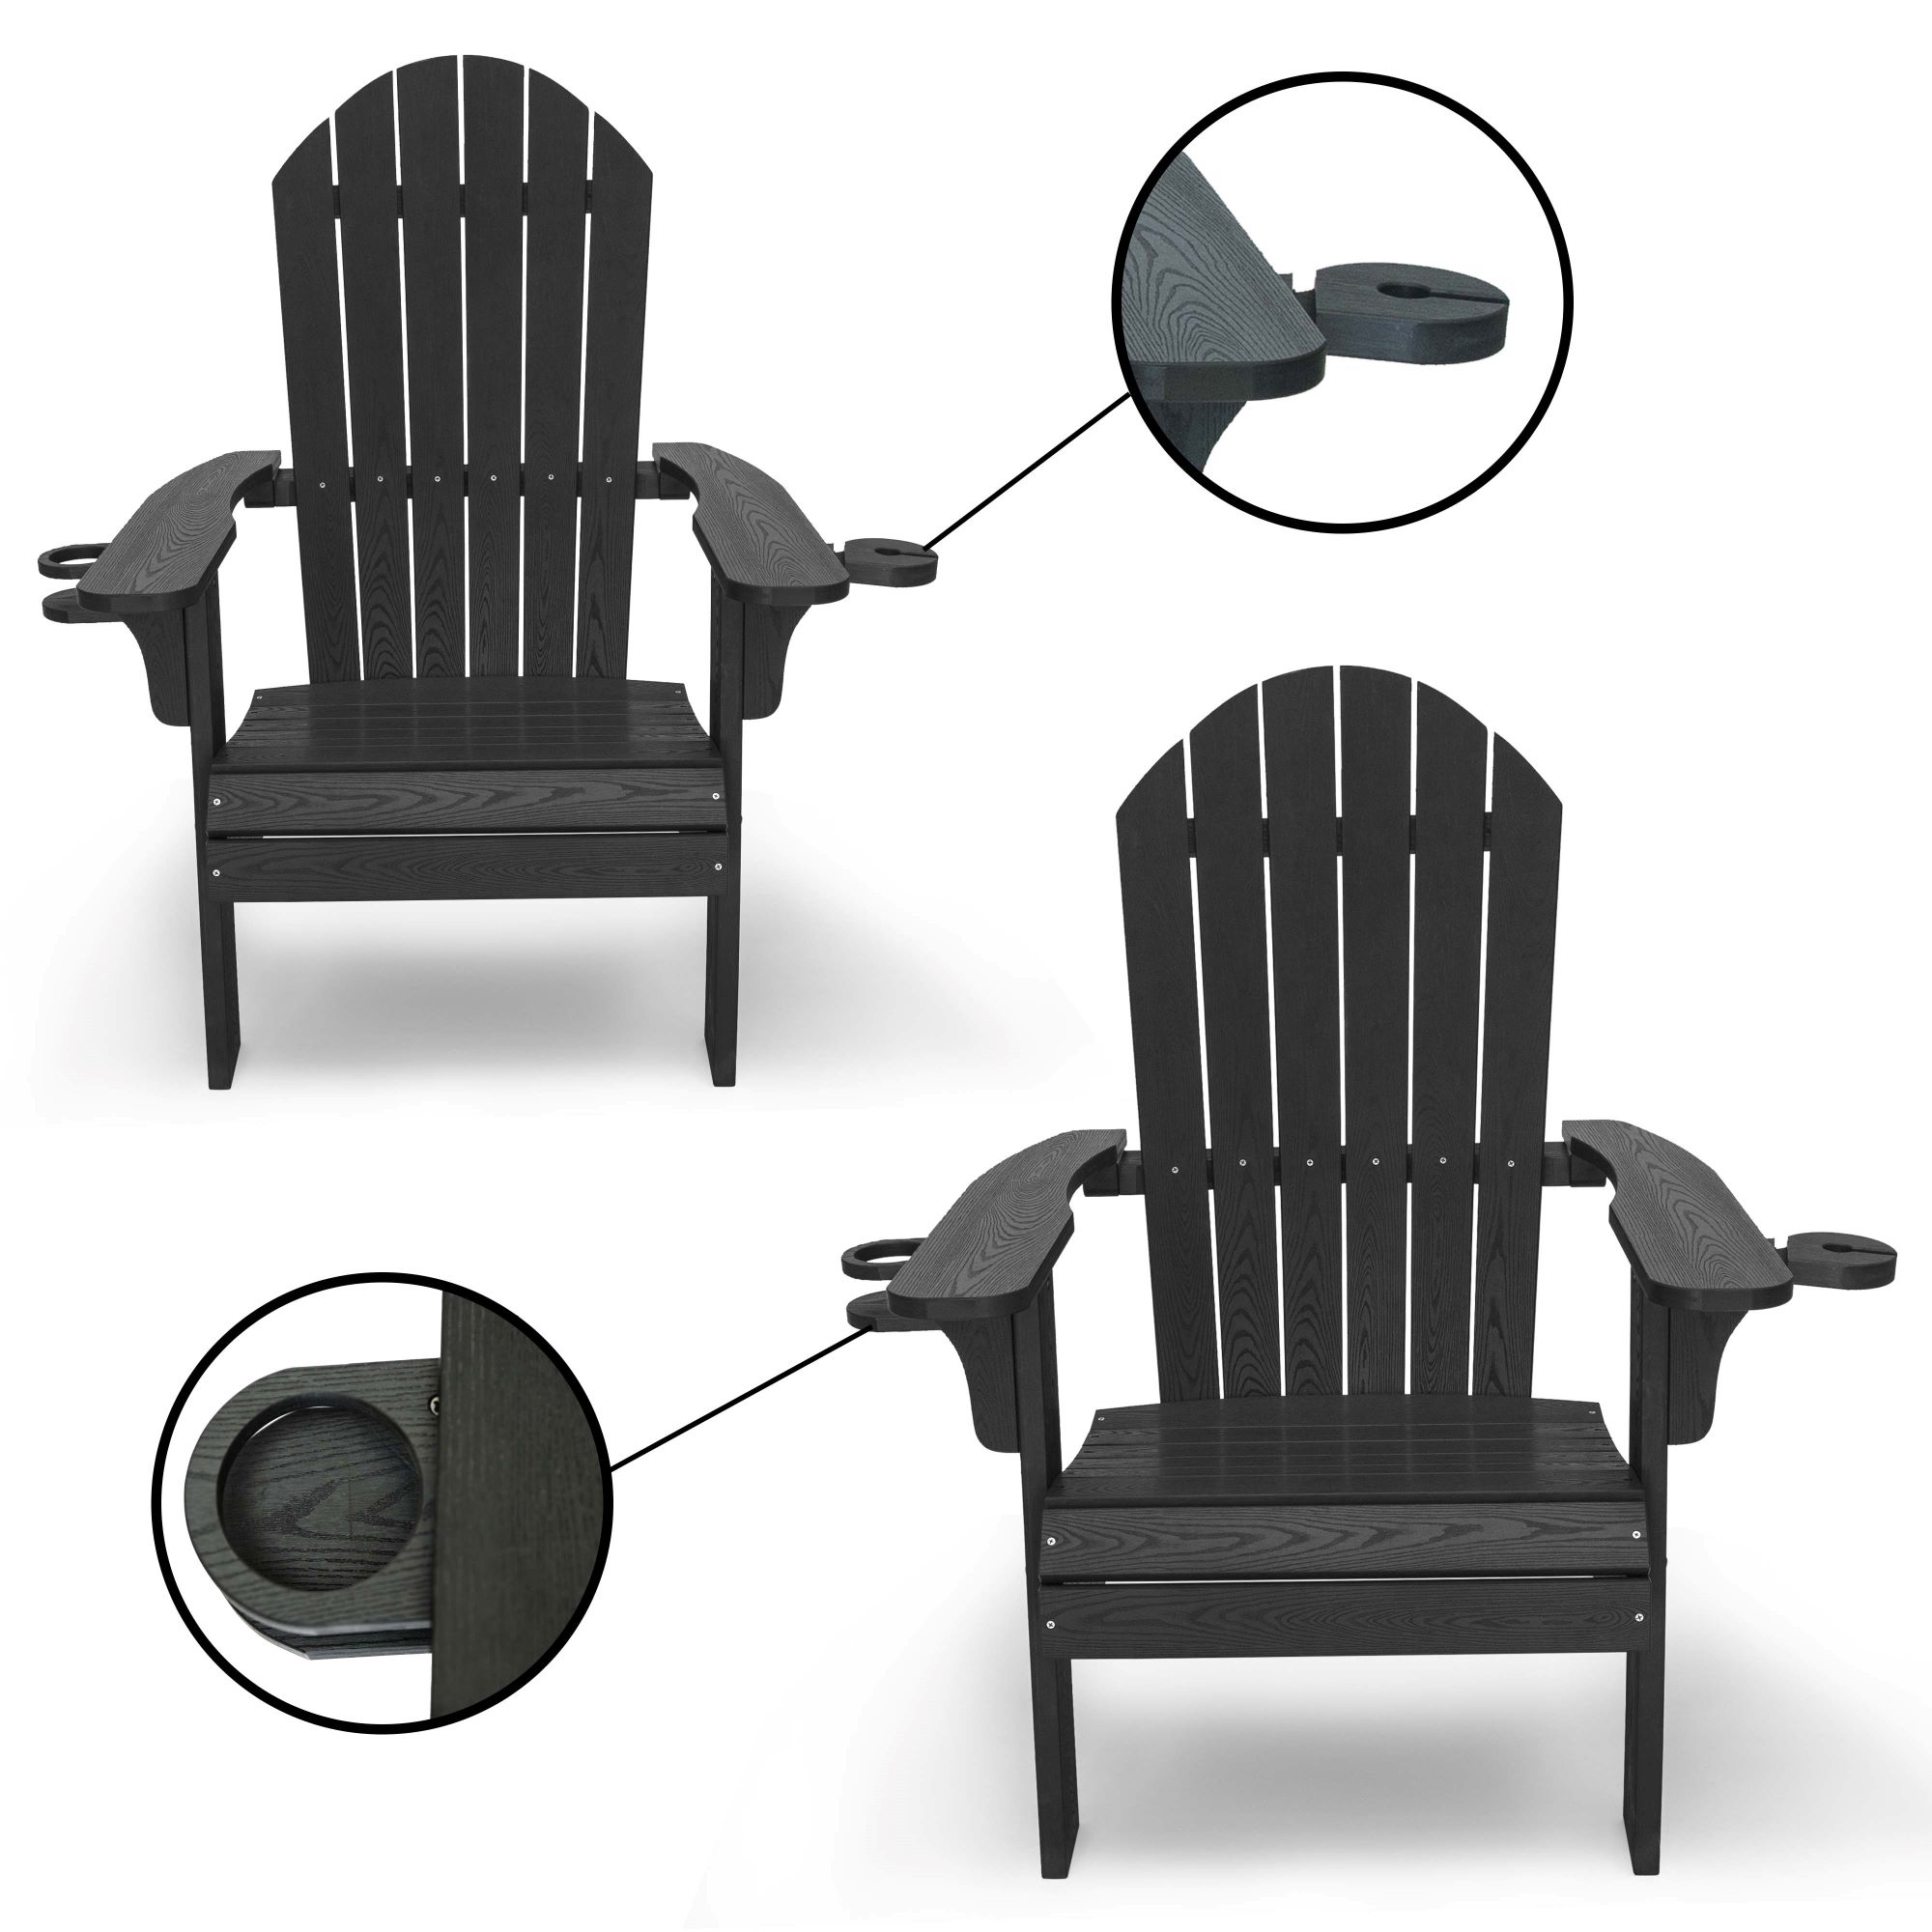 10' Vinyle 1.5" chaise cerclage extérieur PATIO meubles Réparation BLANC 1 1/2" #201 